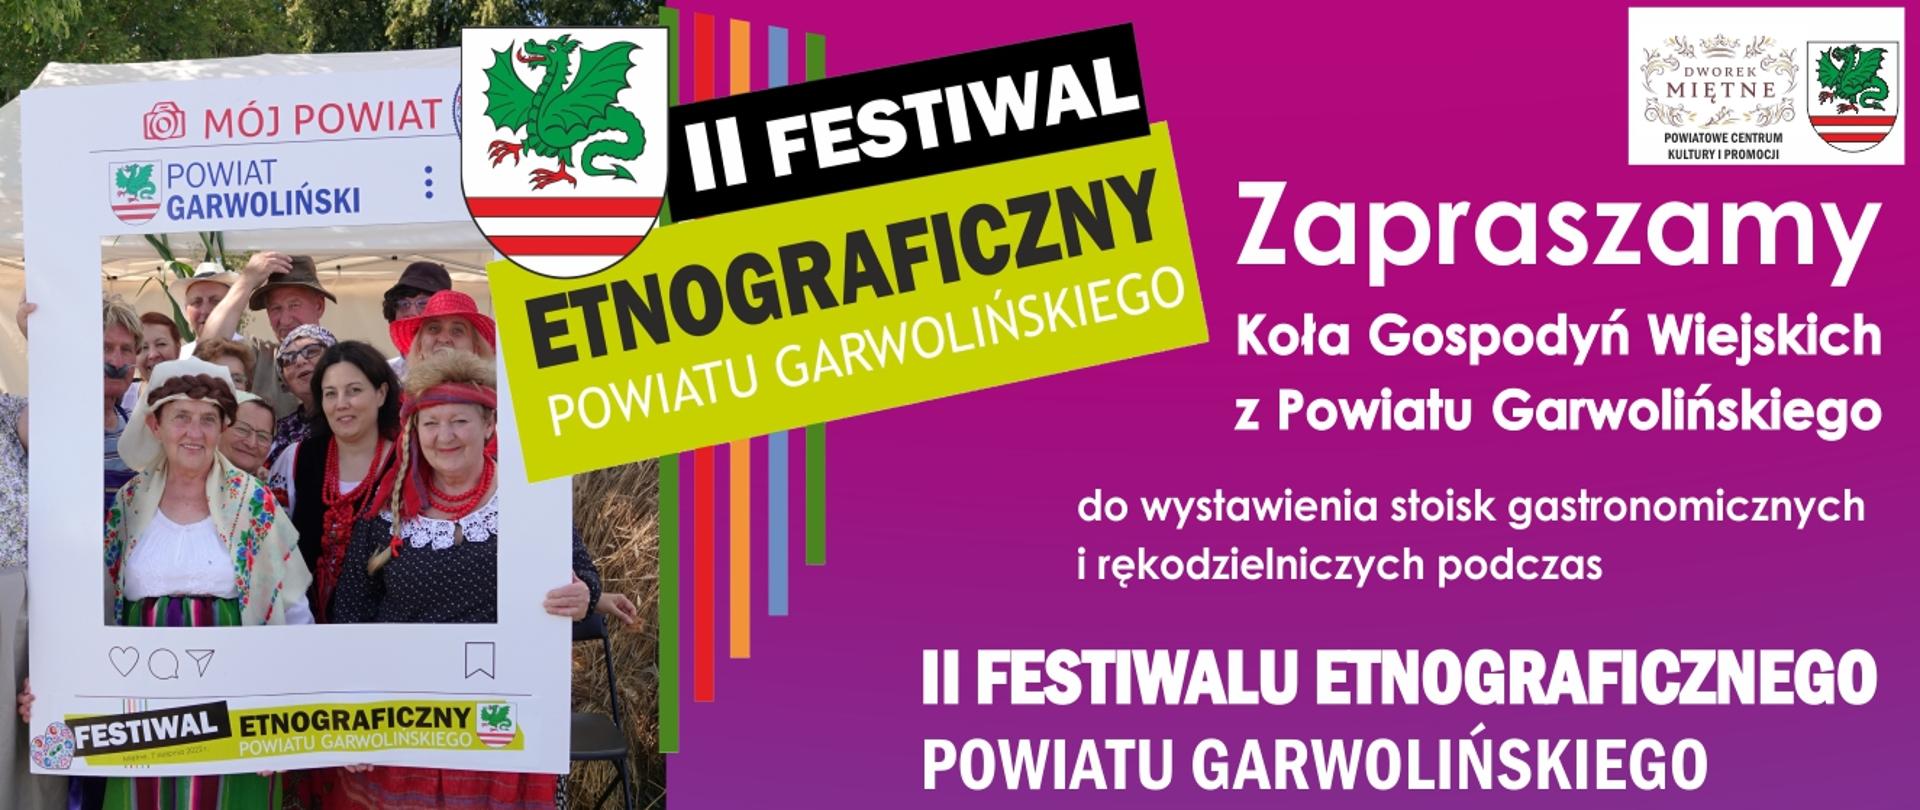 Festiwal_zaproszenie_KGW